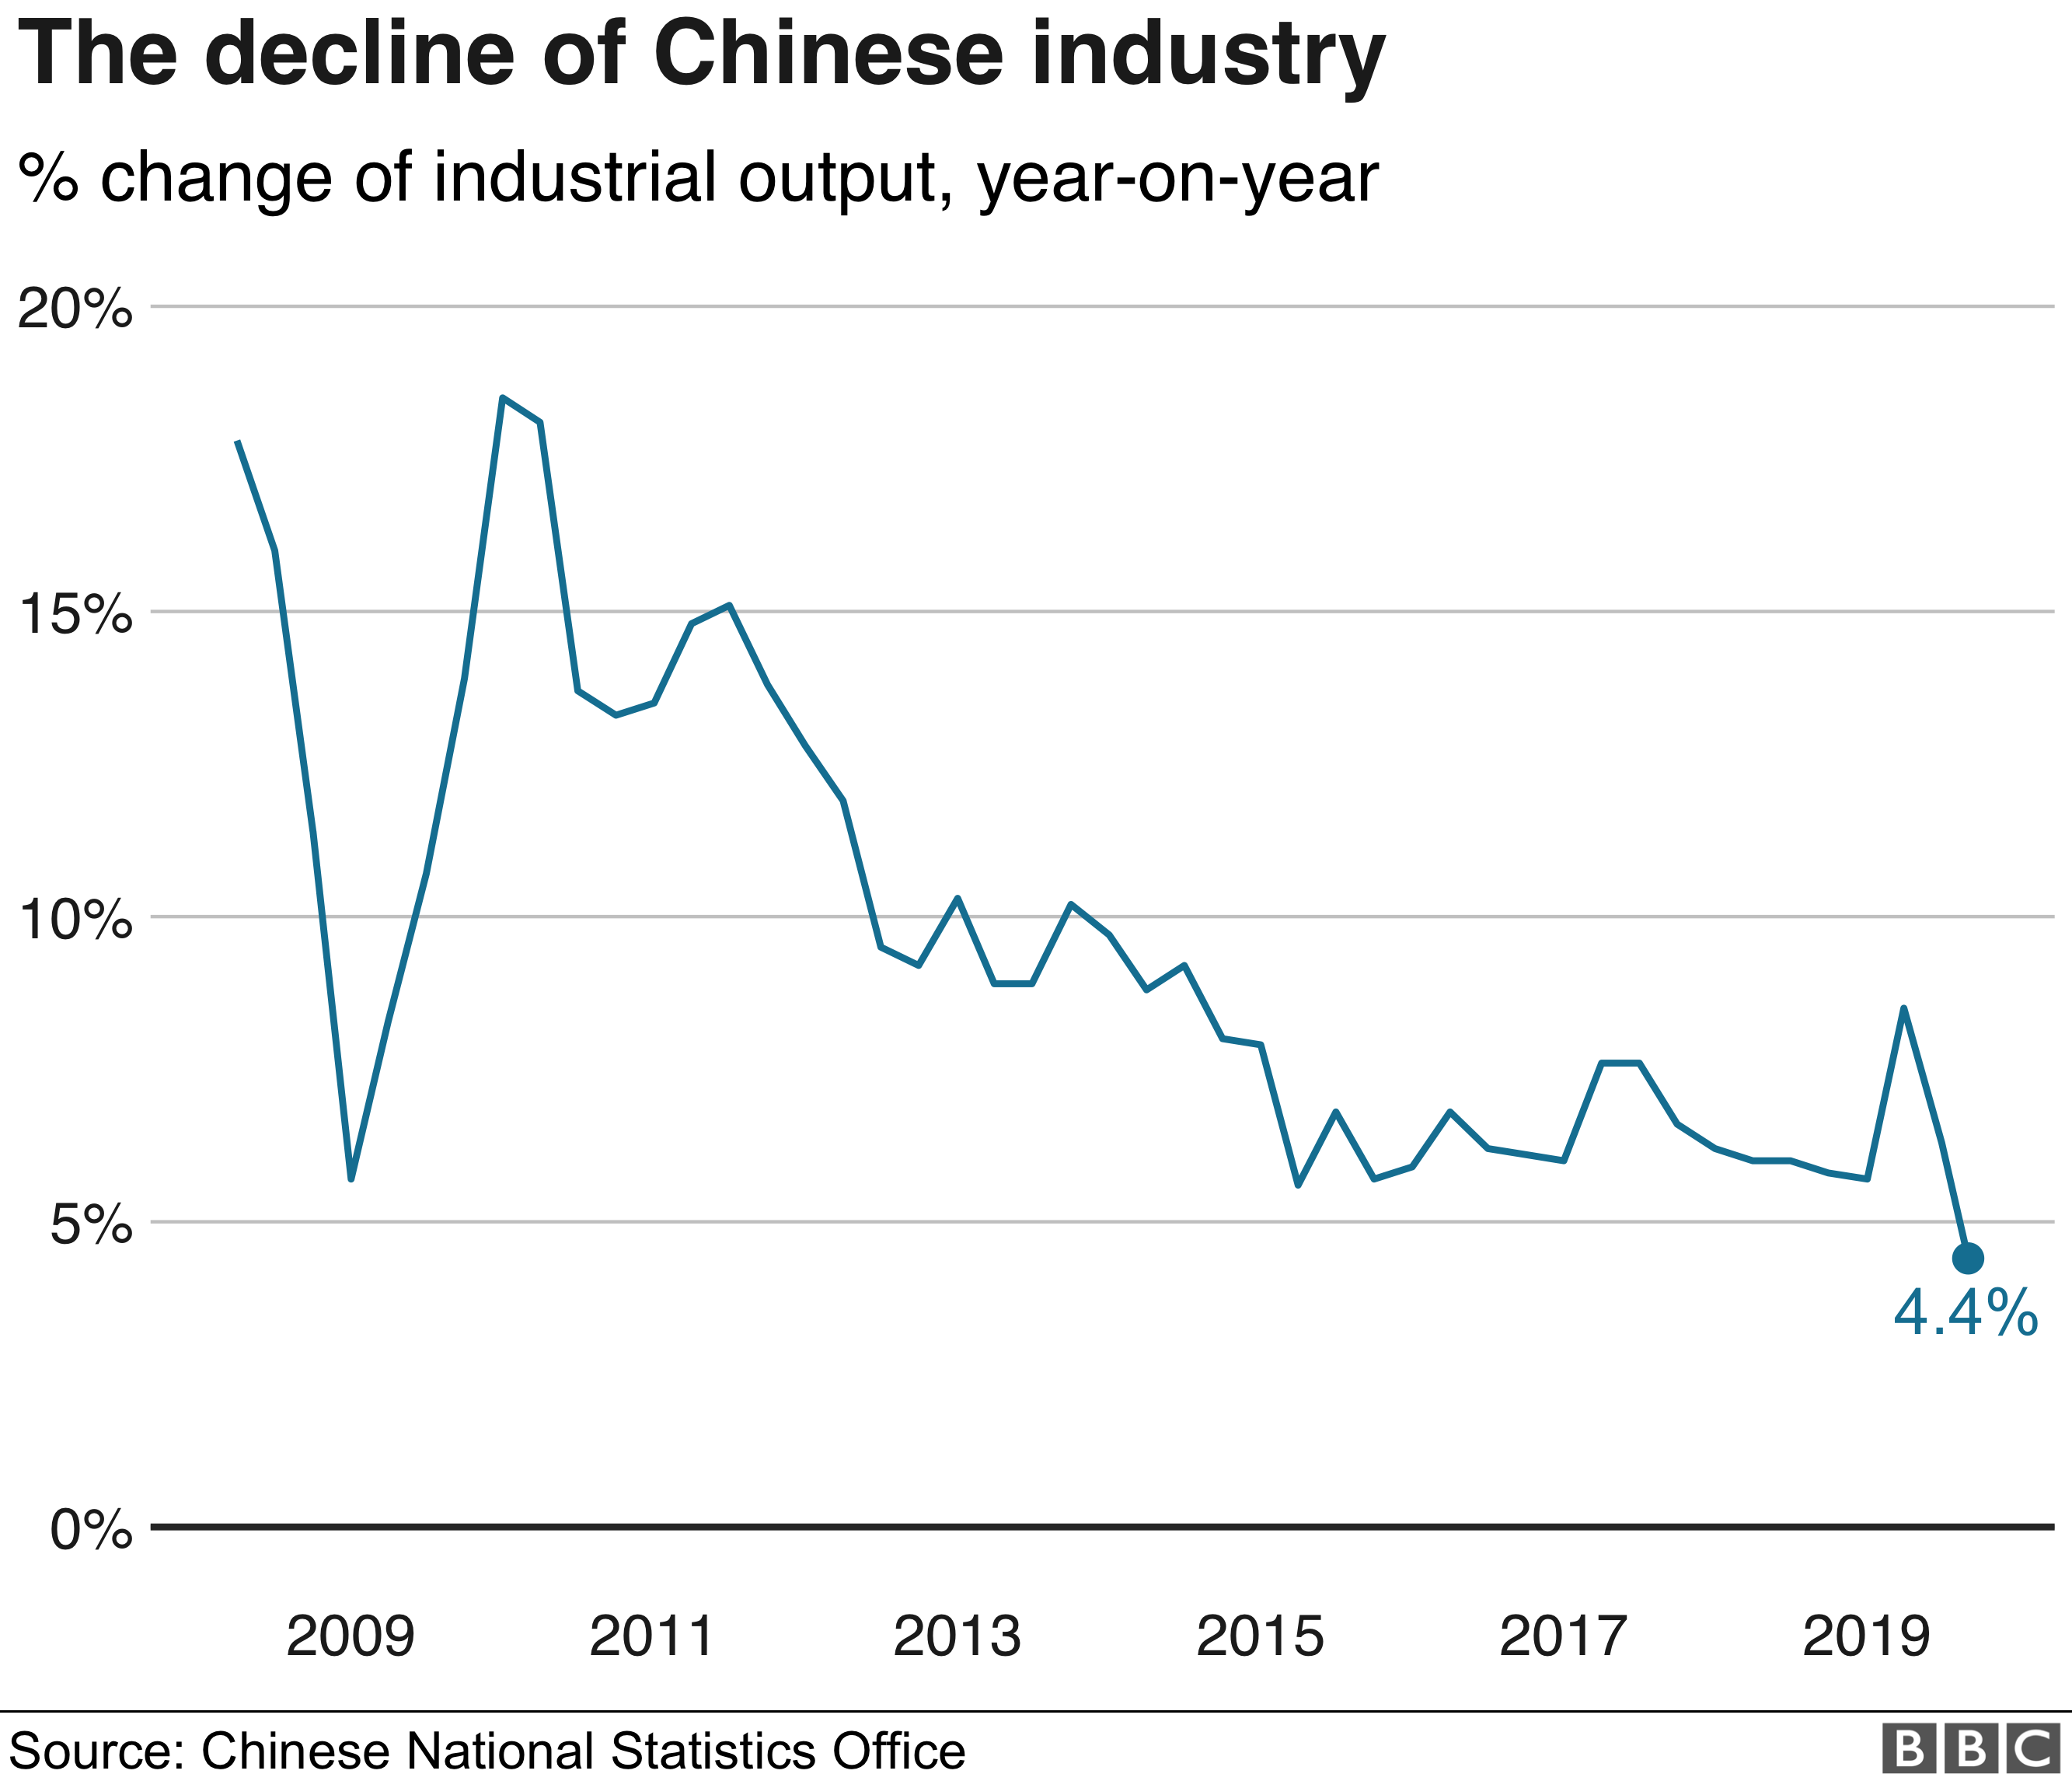 L'andamento della produzione industriale cinese nel grafico proposto dalla BBC su dati dell'istituto di statistica cinese. Fonte: www.bbc.com